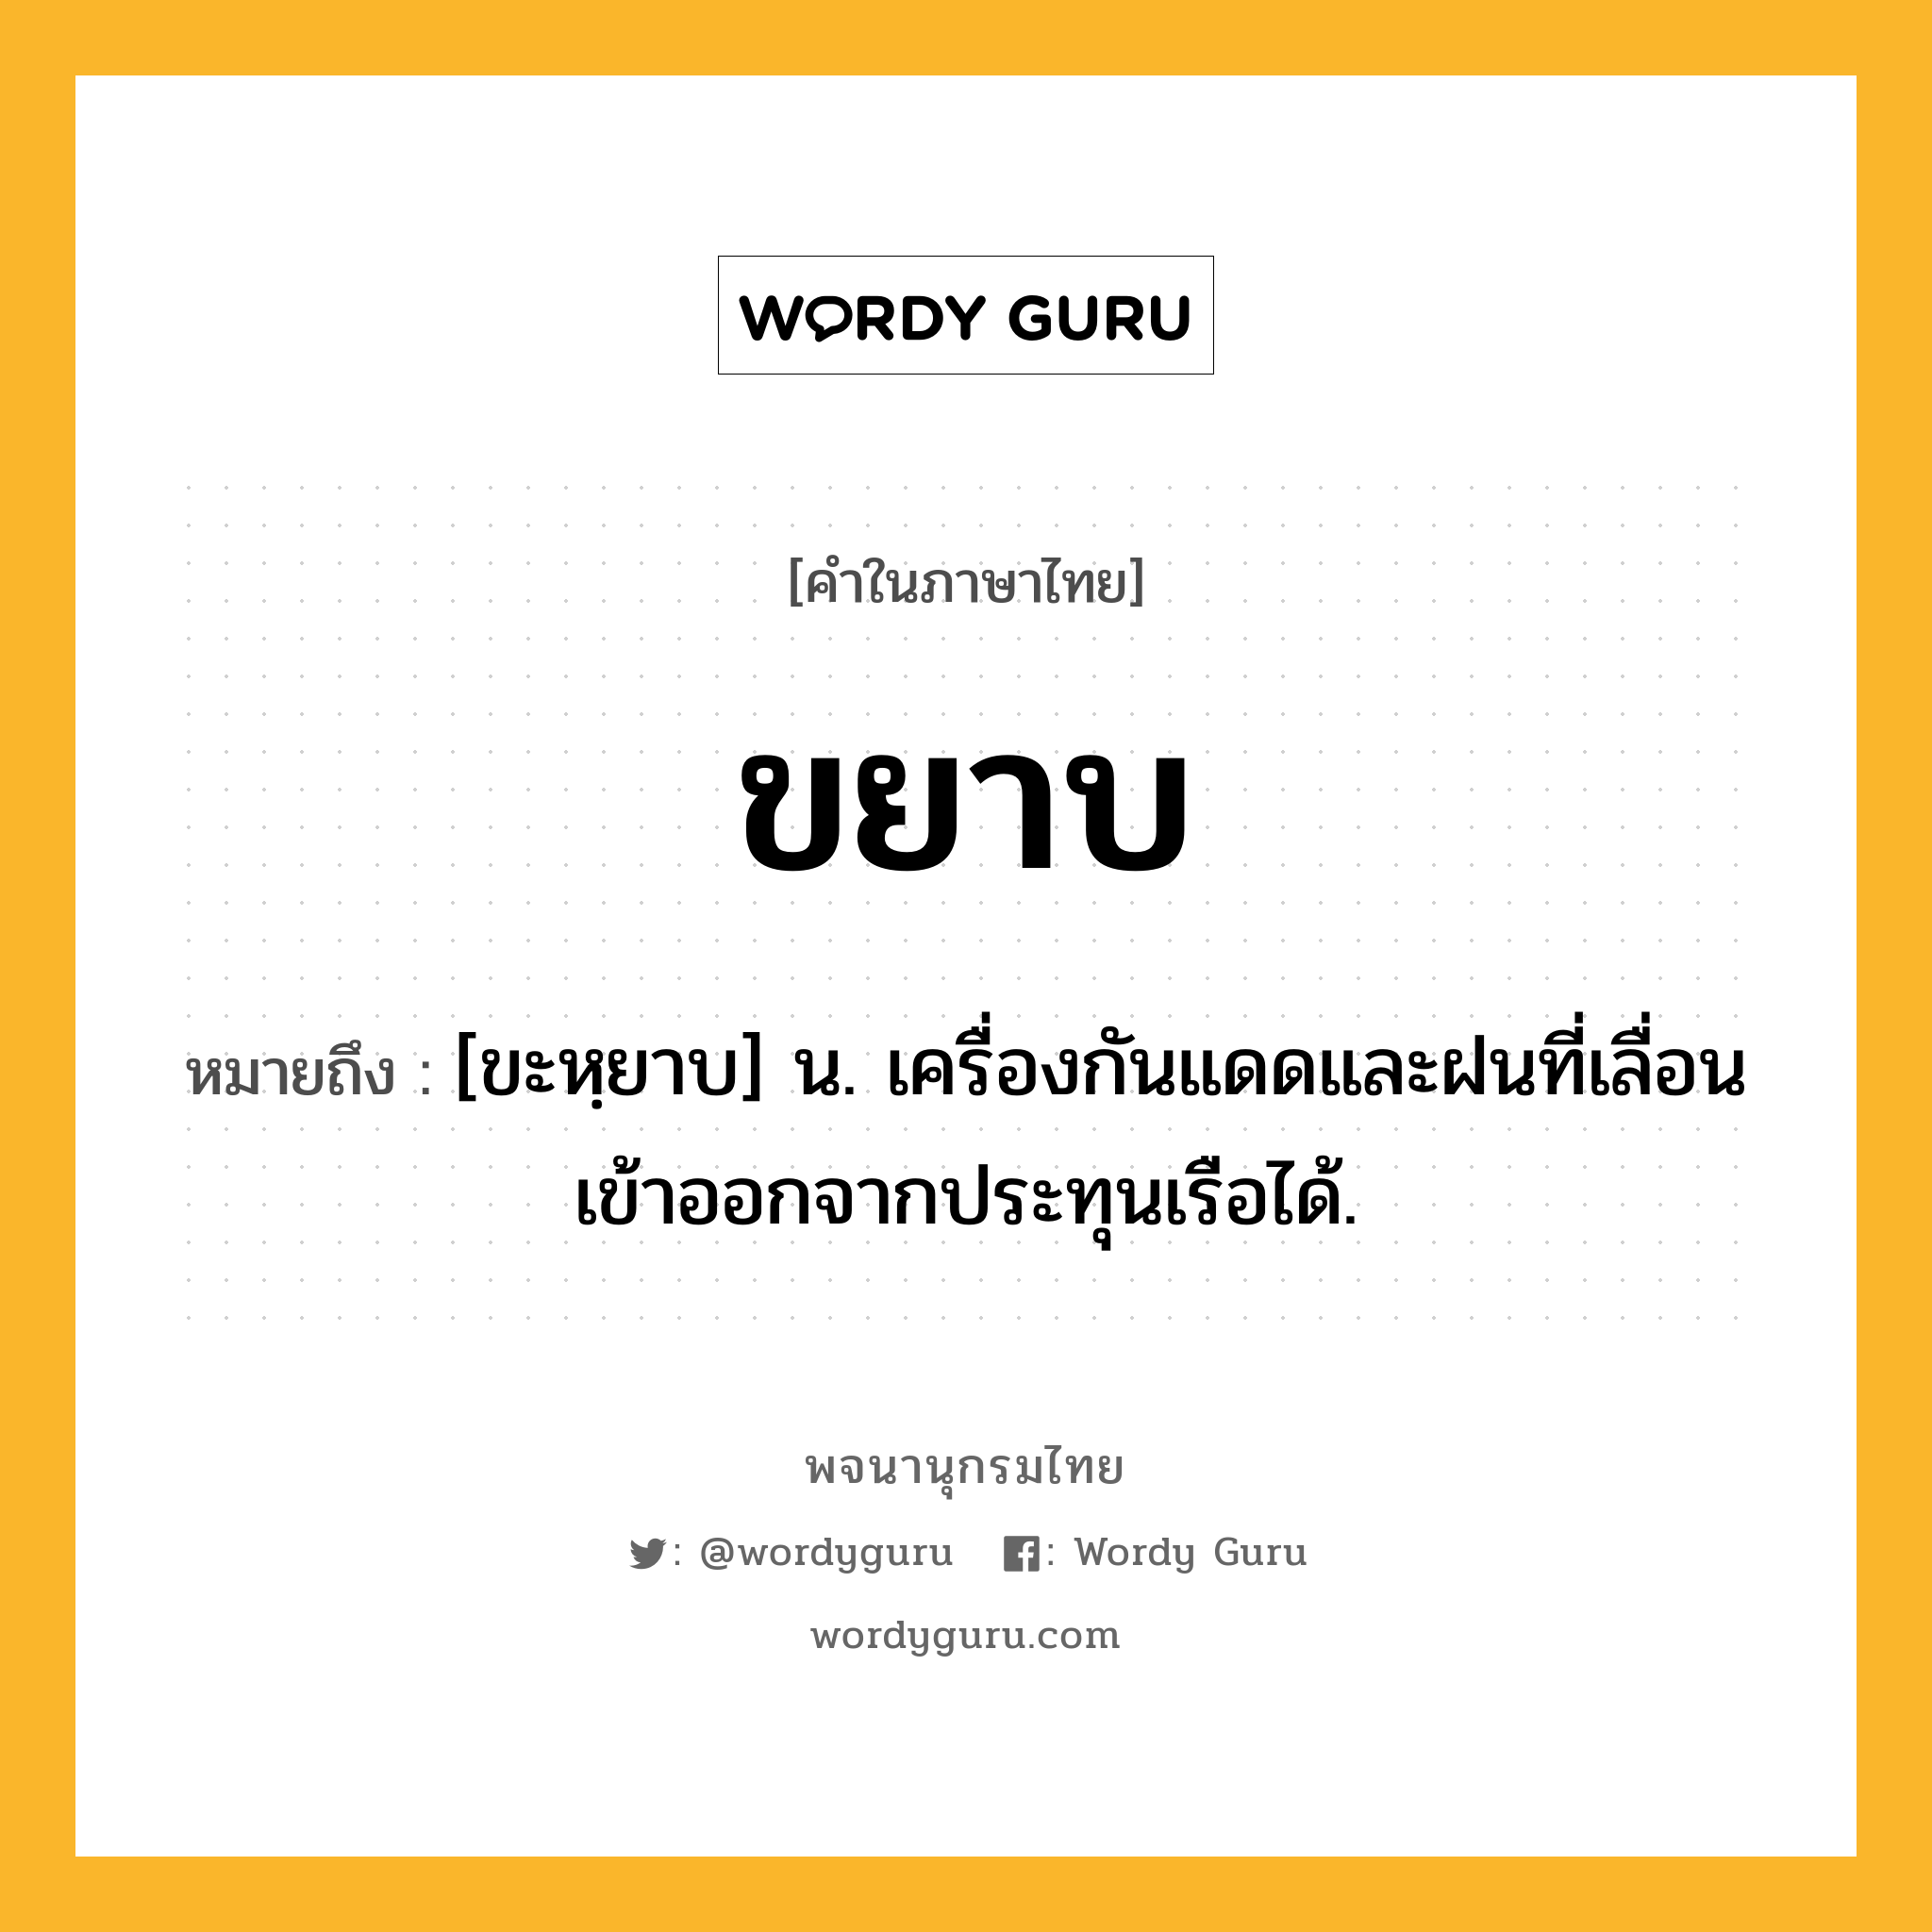 ขยาบ หมายถึงอะไร?, คำในภาษาไทย ขยาบ หมายถึง [ขะหฺยาบ] น. เครื่องกันแดดและฝนที่เลื่อนเข้าออกจากประทุนเรือได้.